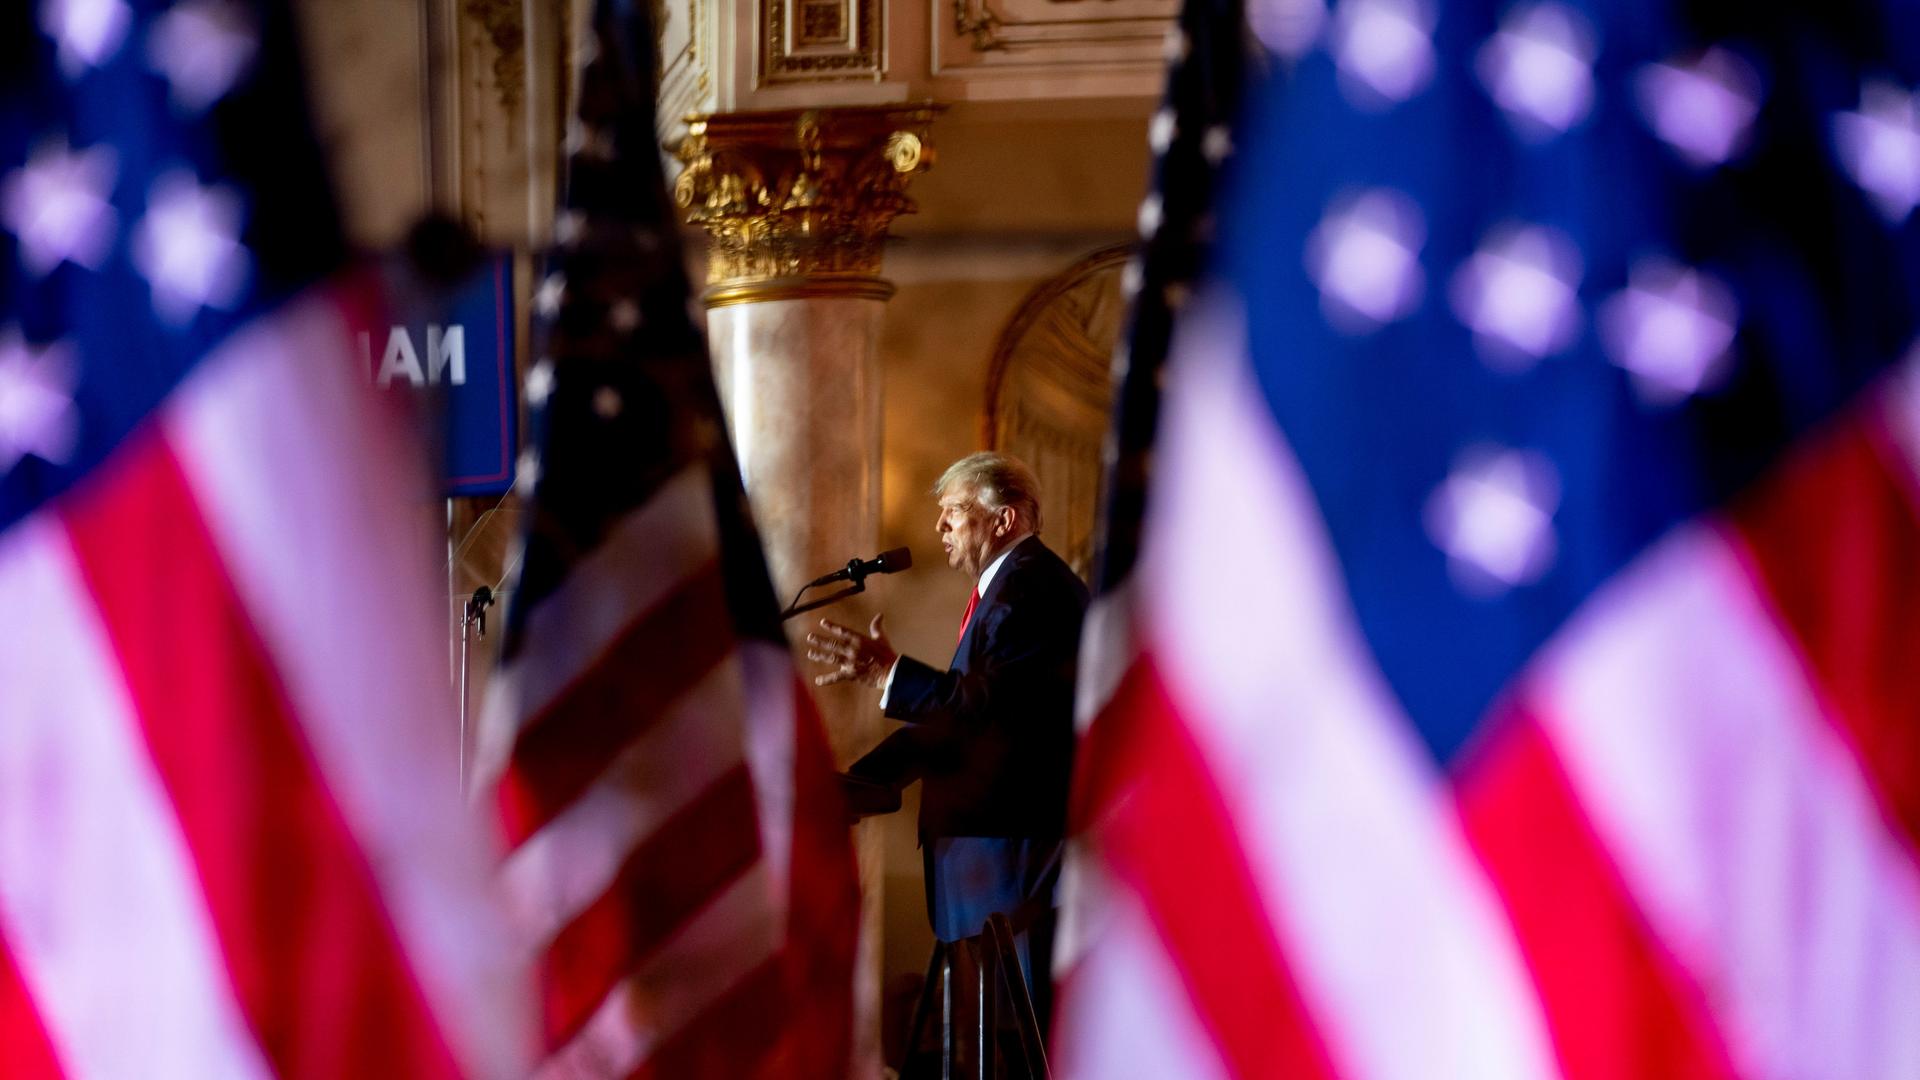 Donald Trump steht im Hintergrund an einem Rednerpult und spricht. Im Vordergrund, in der Unschärfe, ist links und rechts die amerikanische Flagge zu sehen.